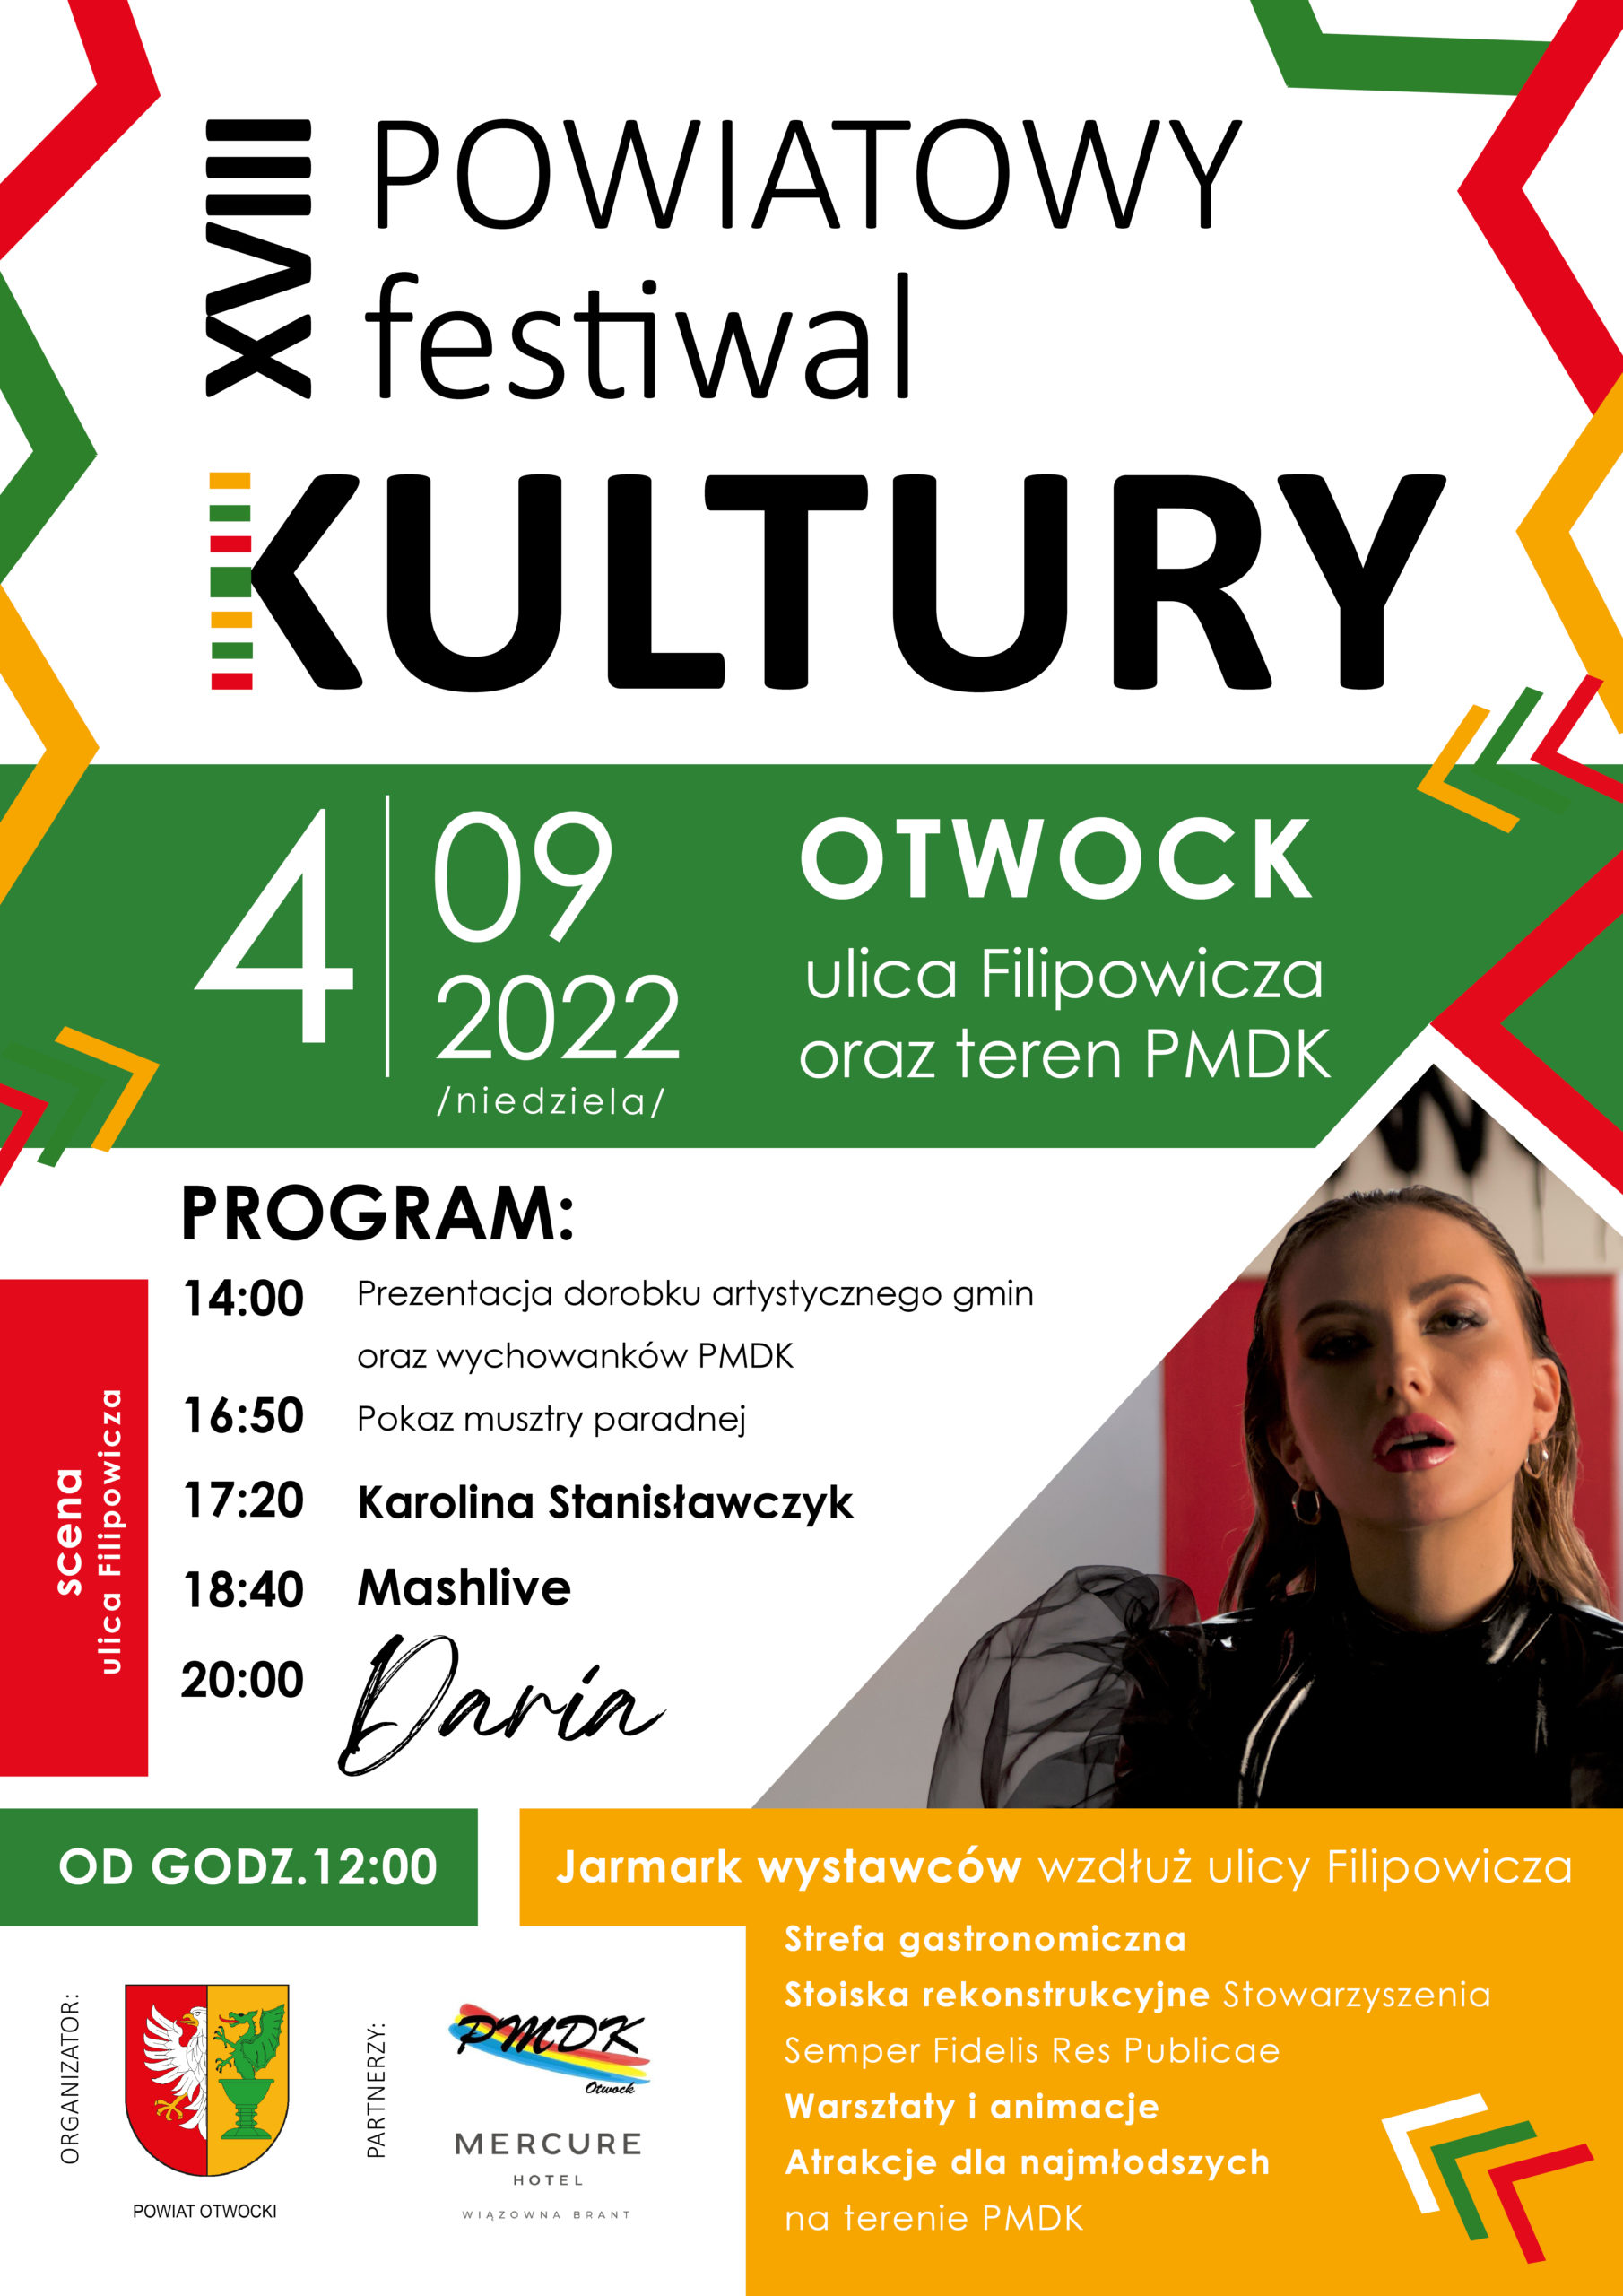 XVIIII powiatowy festiwal kultury 2022 w Otwocku już 4 wrzesnia